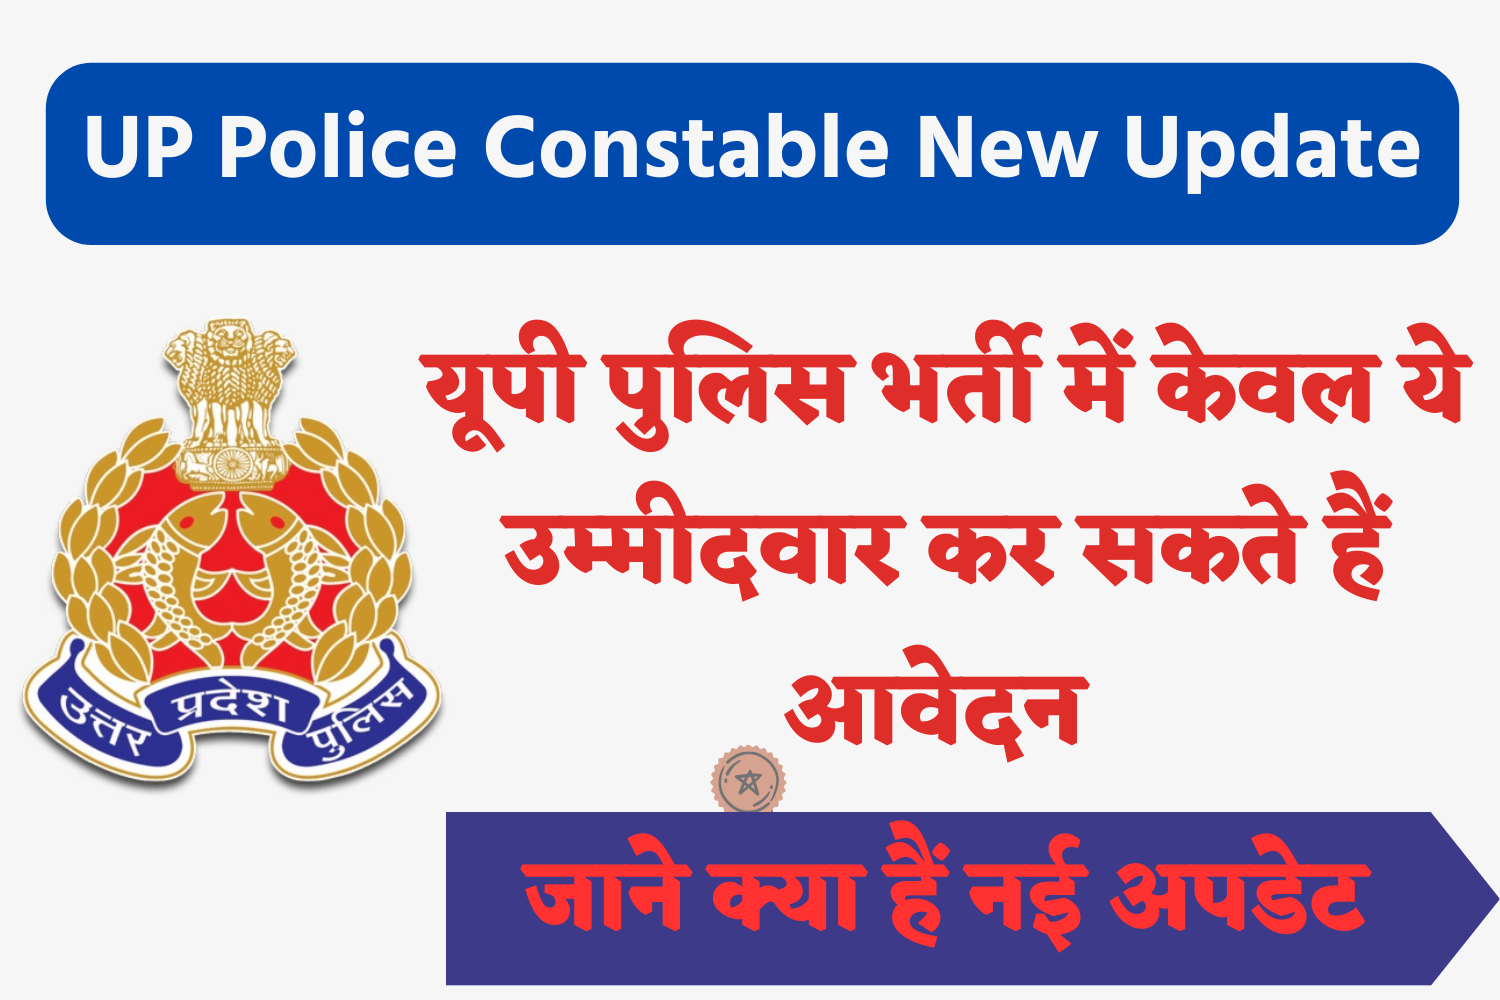 UP Police Constable Recruitment New Update - यूपी पुलिस भर्ती में केवल ये उम्मीदवार कर सकते हैं आवेदन, देखें नई अपडेट